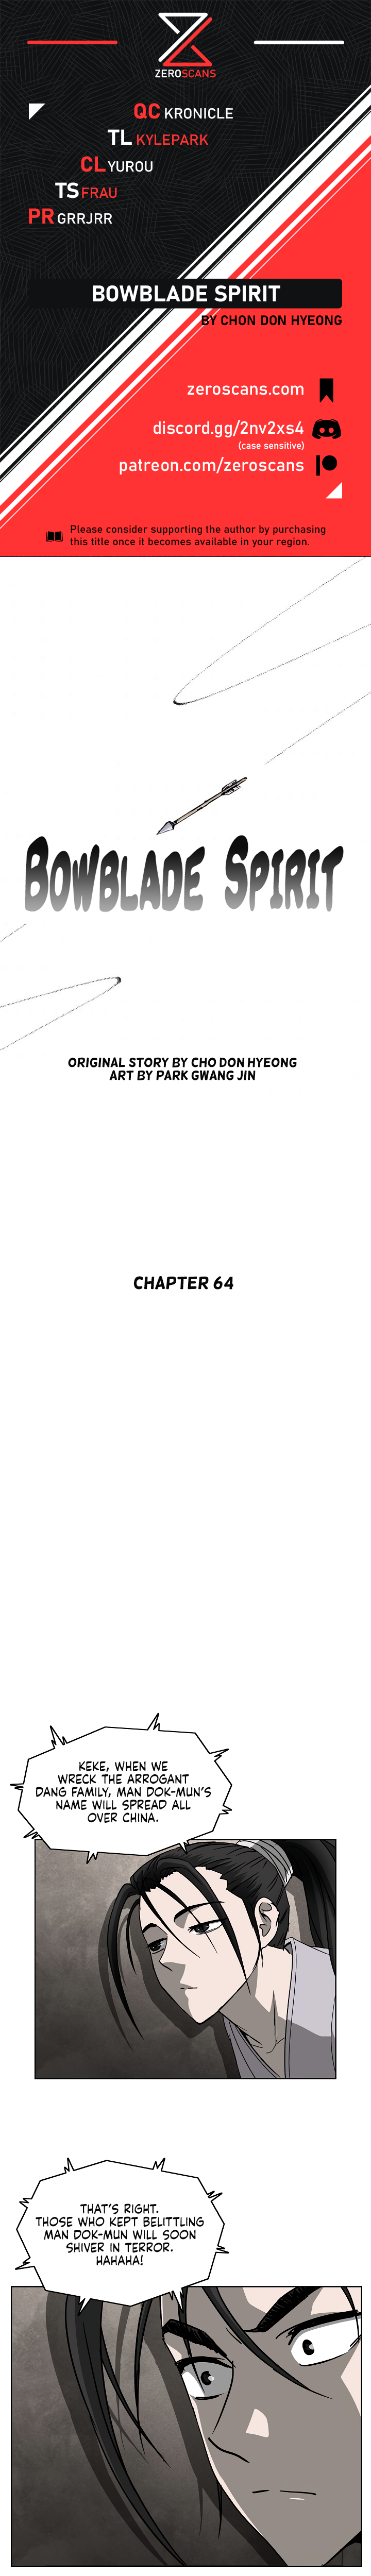 Bowblade Spirit - Chapter 5989 - Image 1